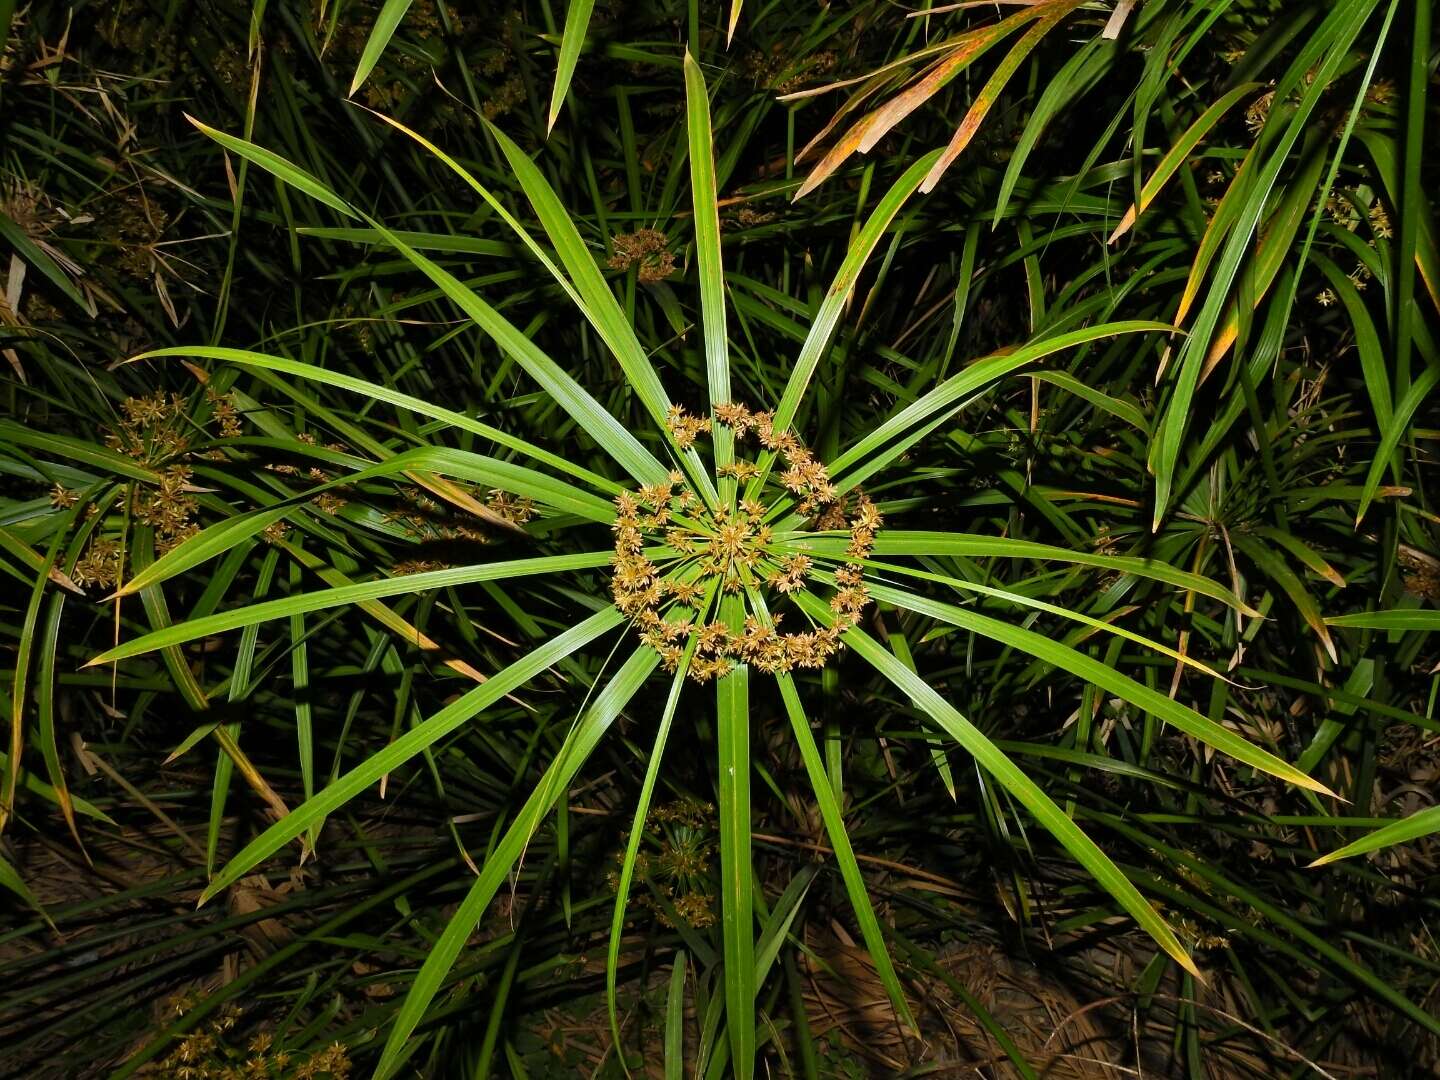 Image of Cyperus alternifolius subsp. flabelliformis Kük.